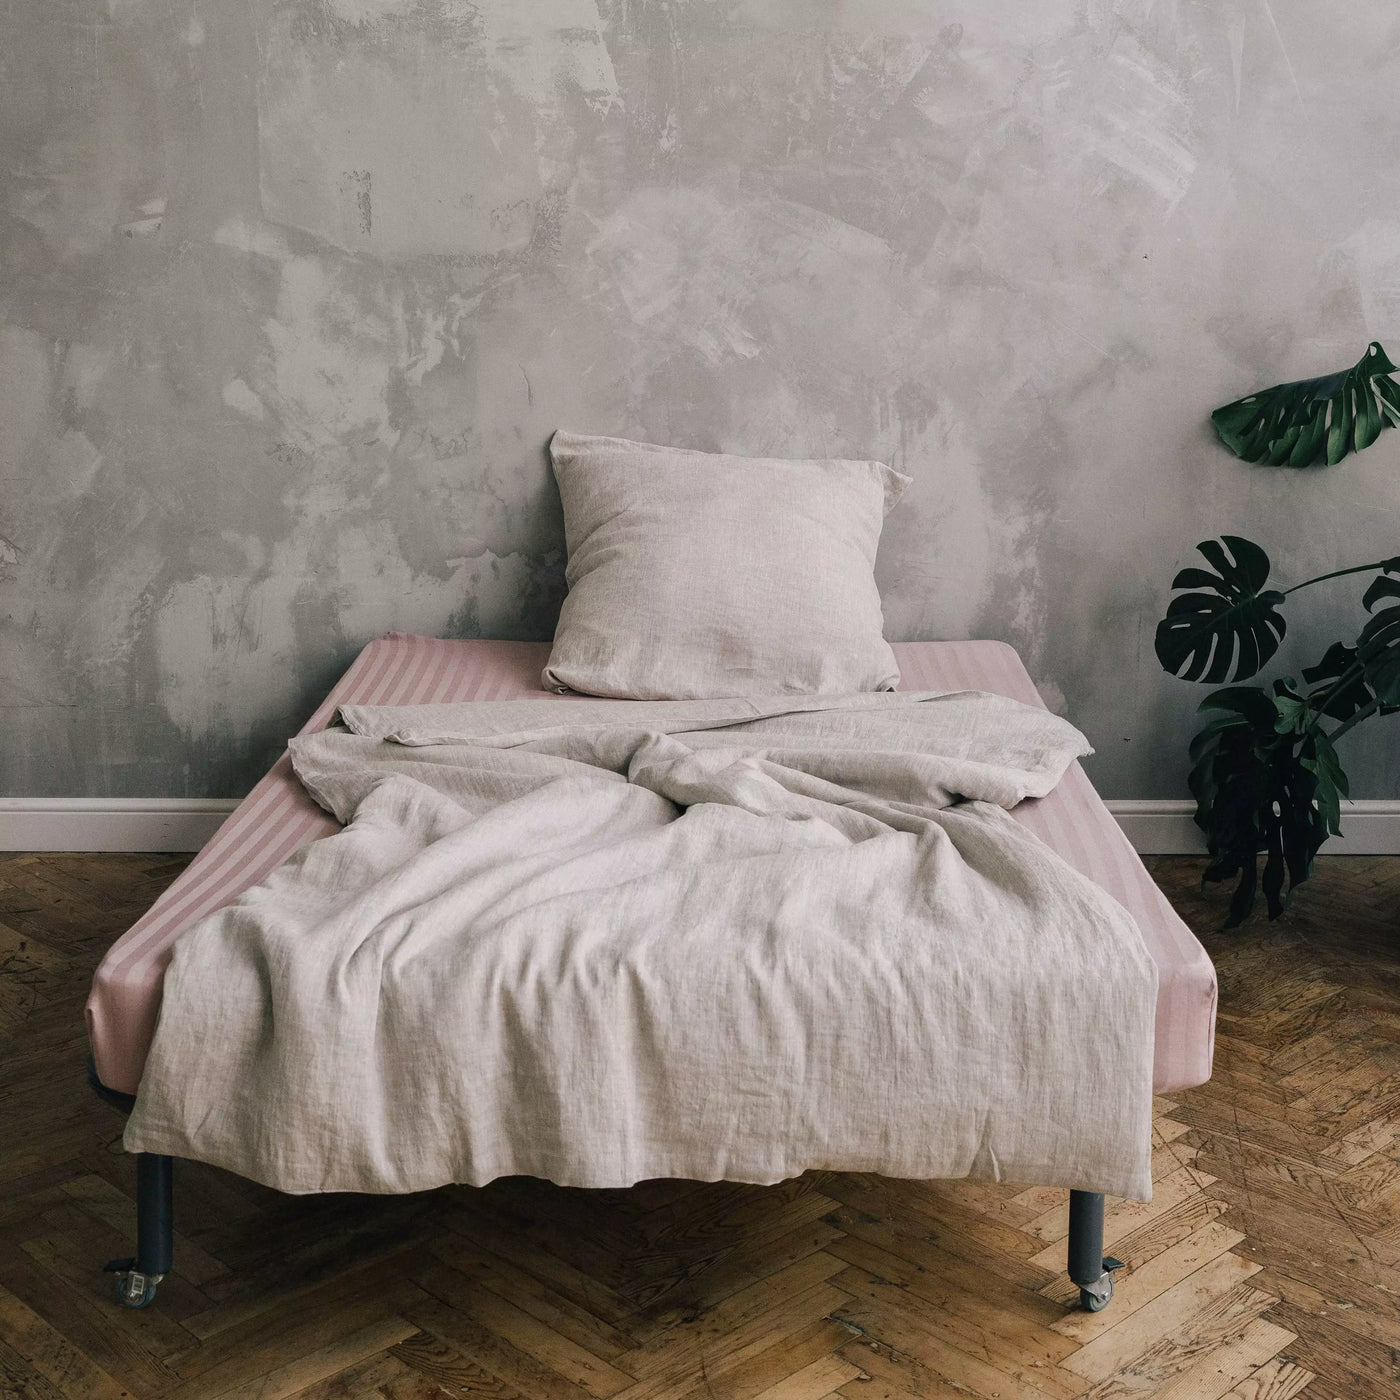 Acquista il set di biancheria da letto in lino super soffice 135x200 in lino naturale.